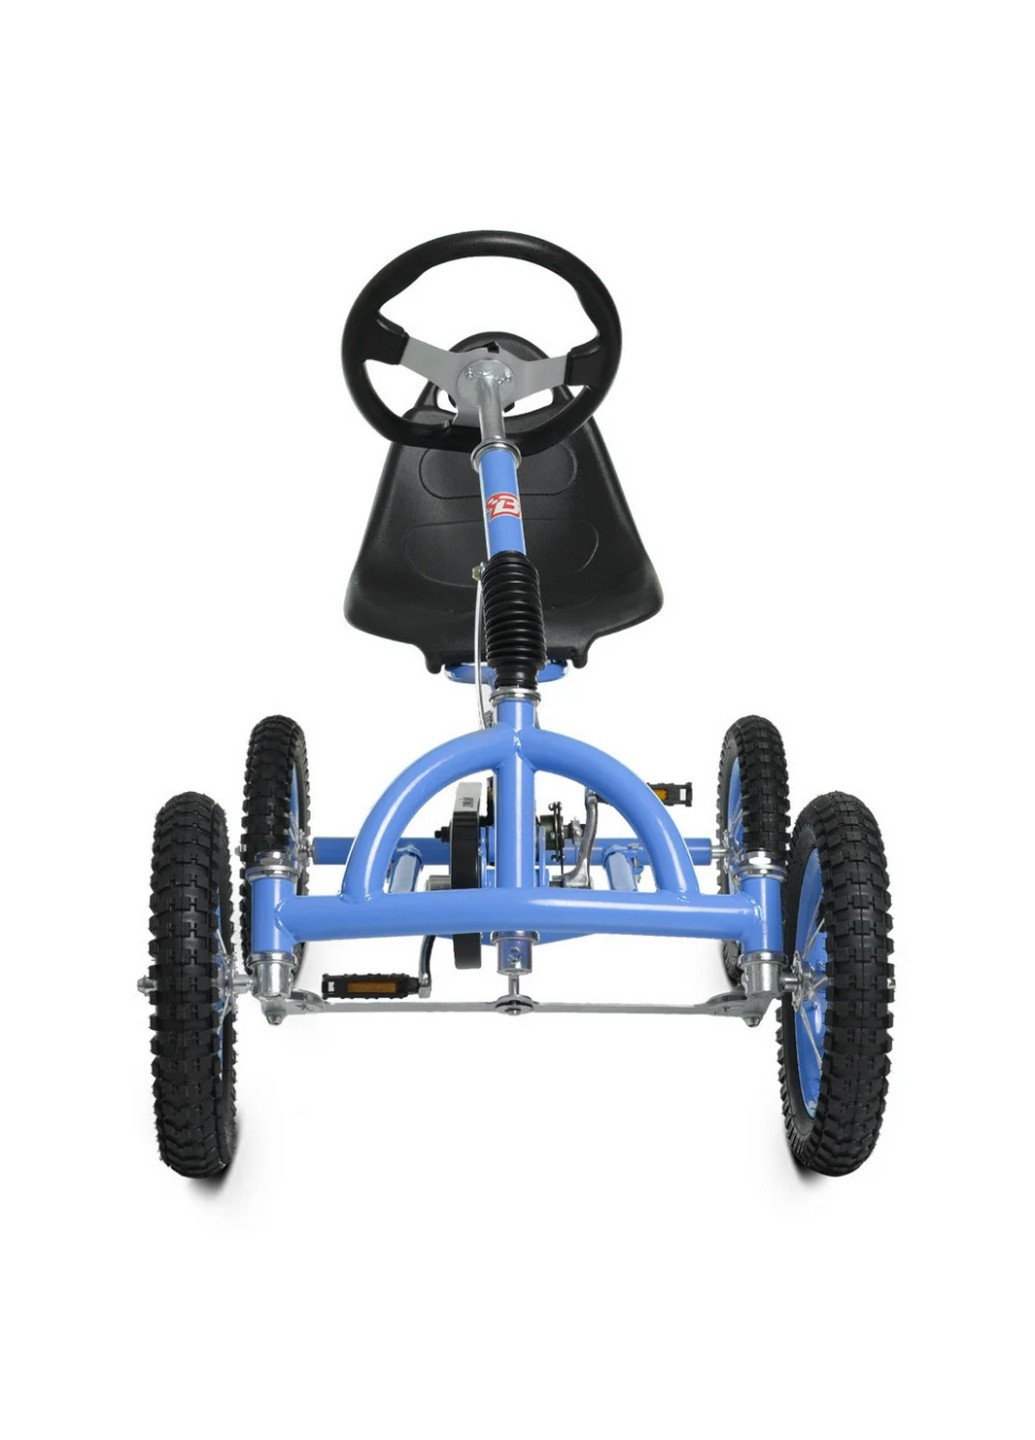 Велокарт дитячий регулювання сидіння 126х60х82 см Bambi (258032608)